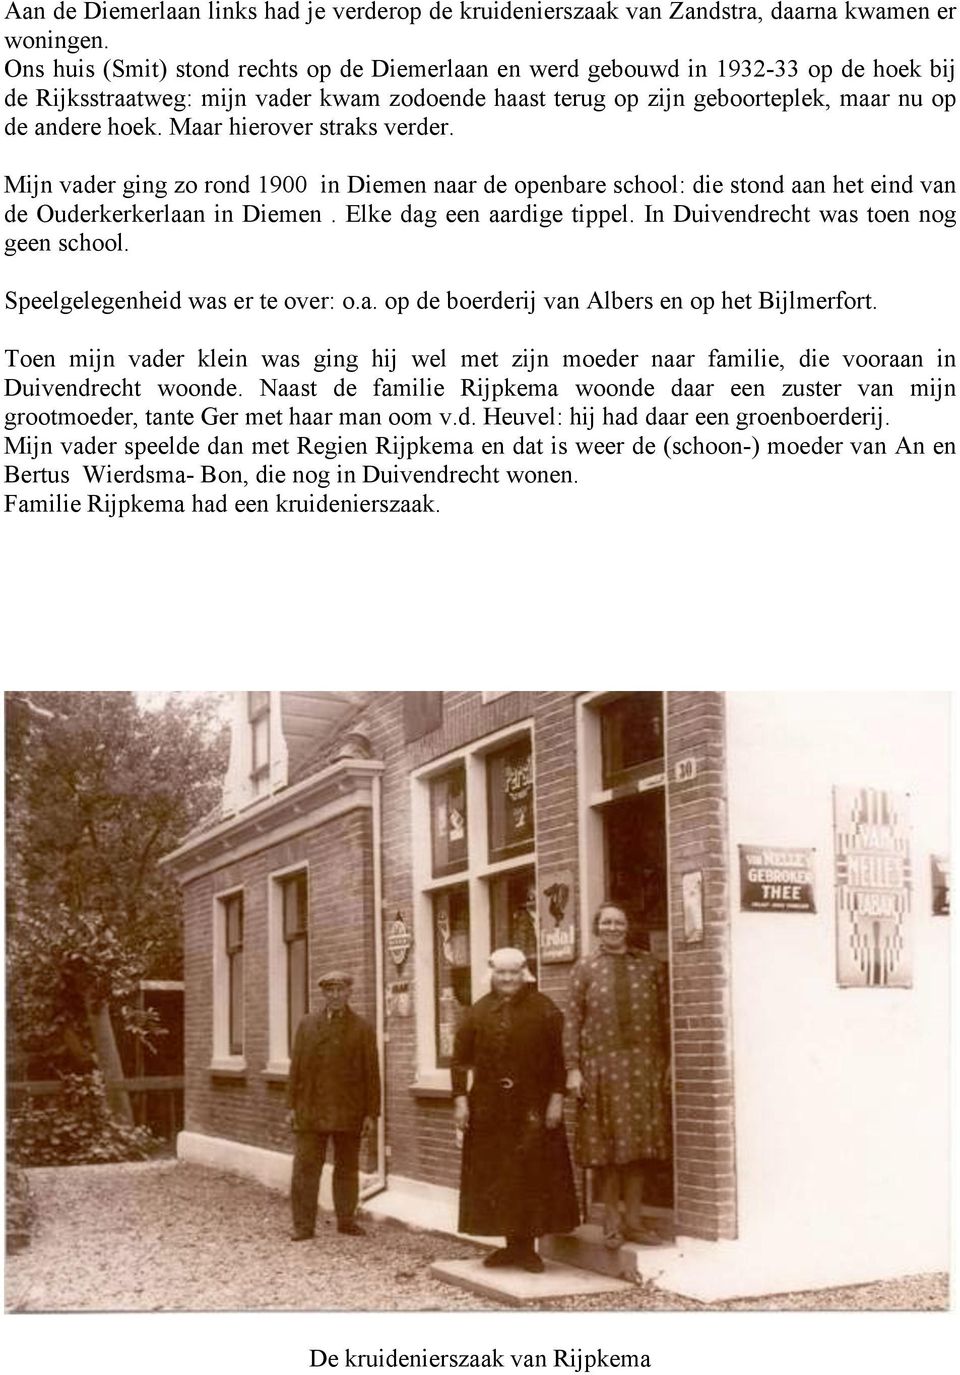 Maar hierover straks verder. Mijn vader ging zo rond 1900 in Diemen naar de openbare school: die stond aan het eind van de Ouderkerkerlaan in Diemen. Elke dag een aardige tippel.